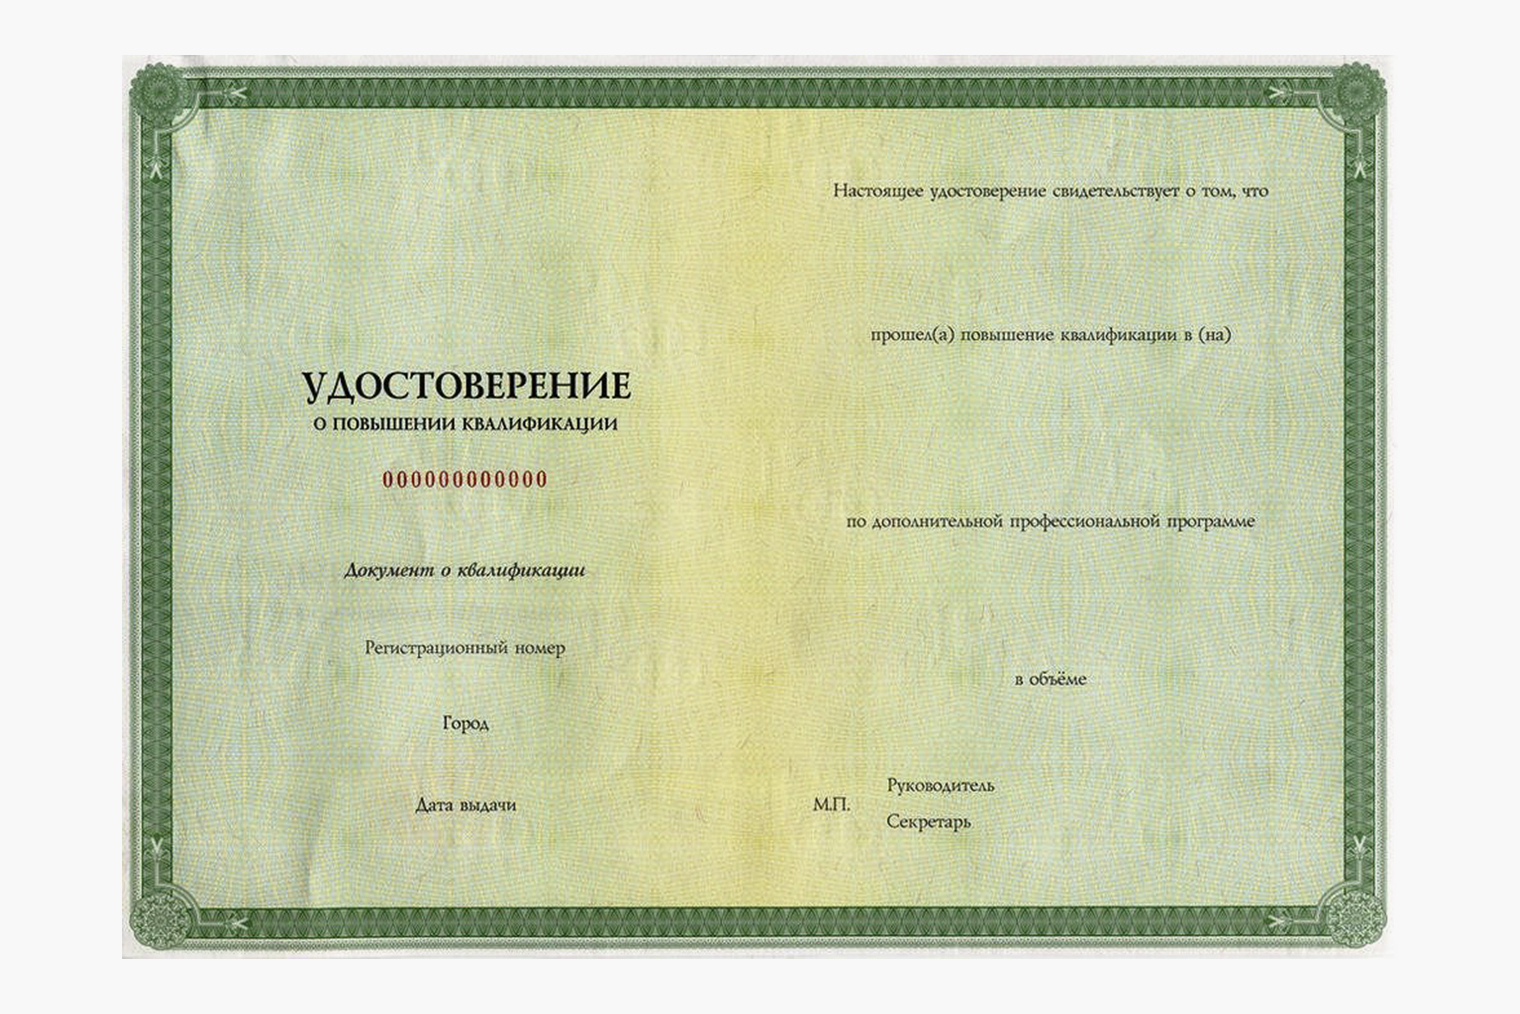 А это образец удостоверения о повышении квалификации. Источник: fknz.ru